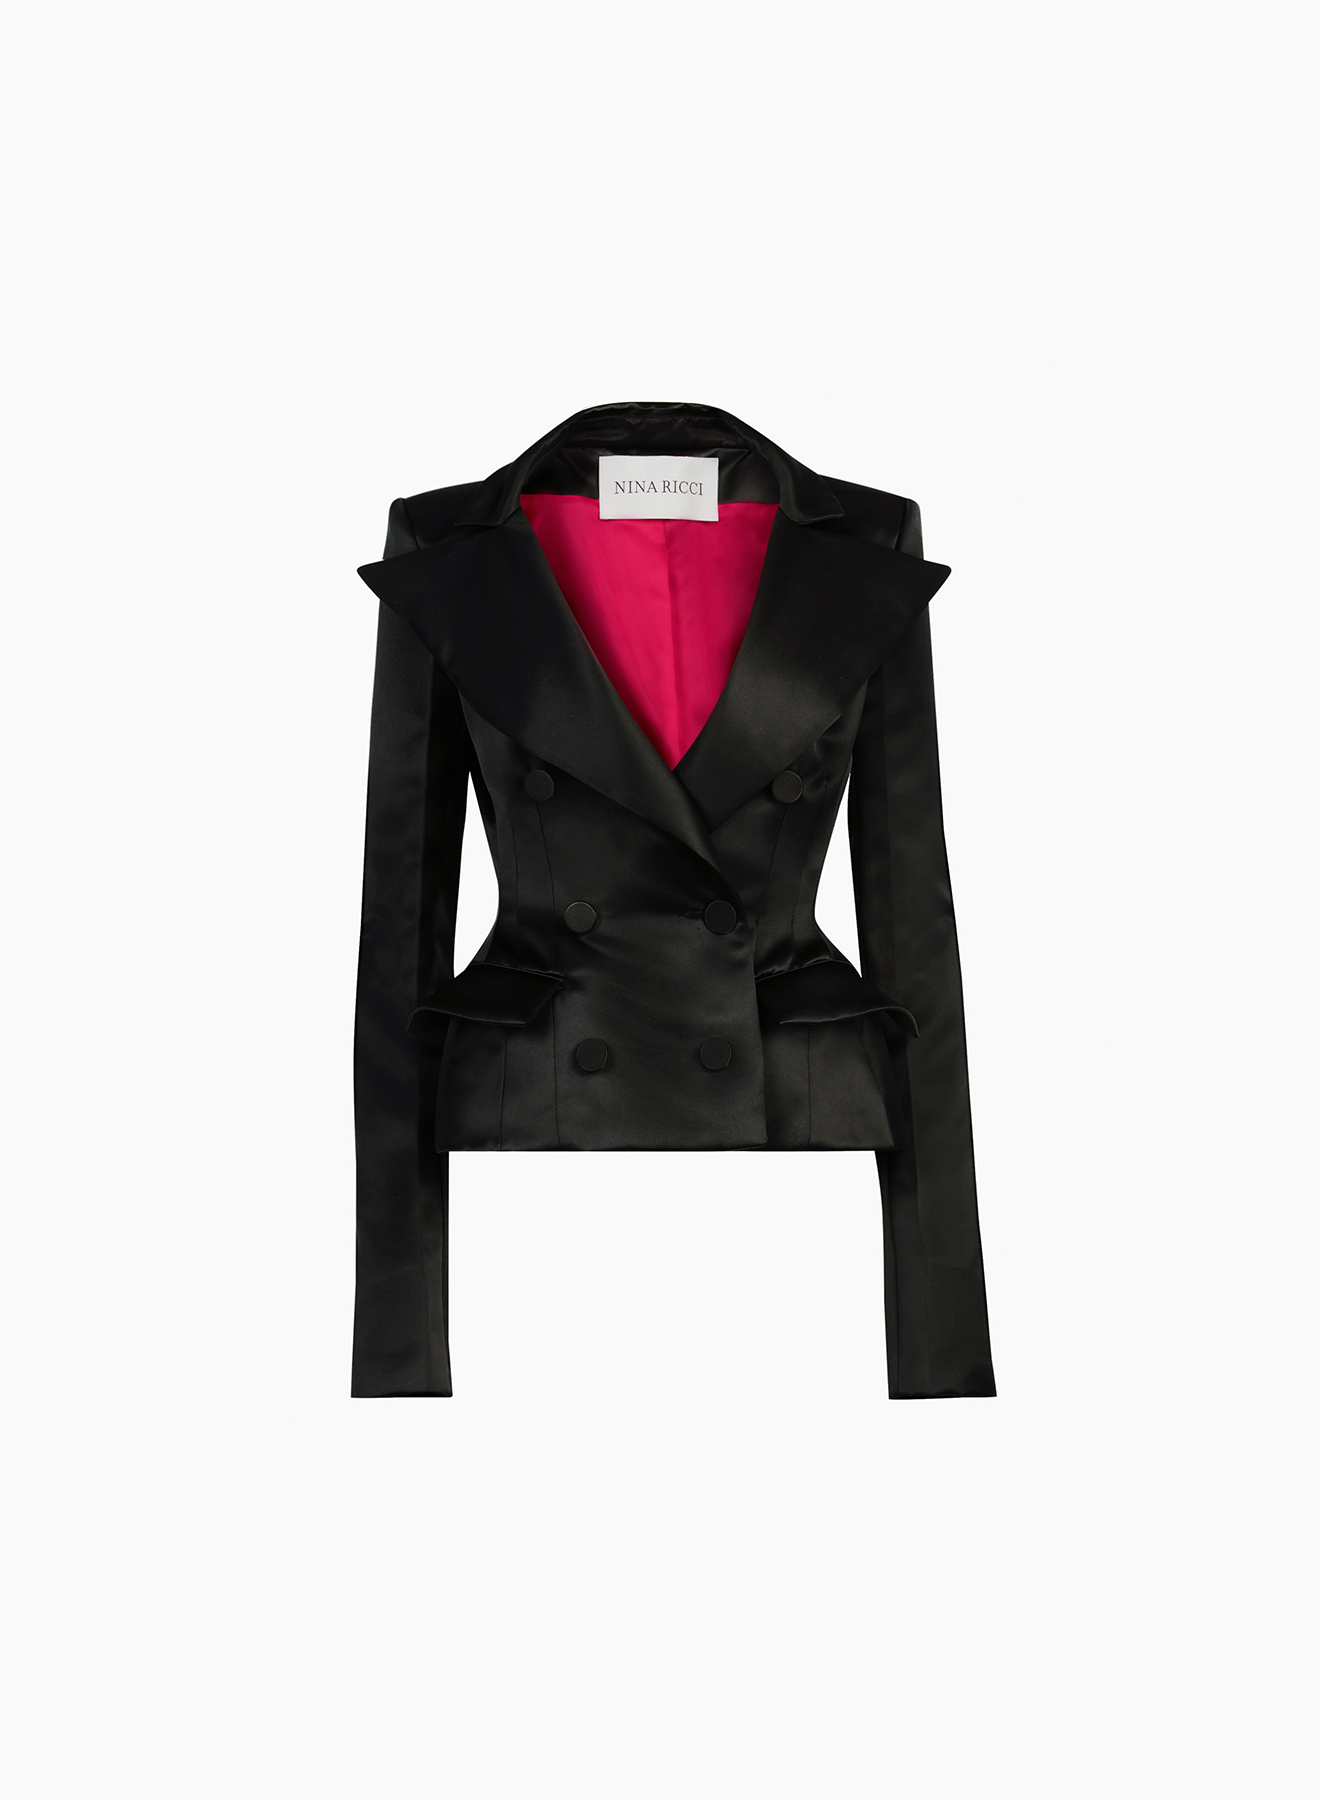 Women's coats and jackets - Fashion - Nina Ricci